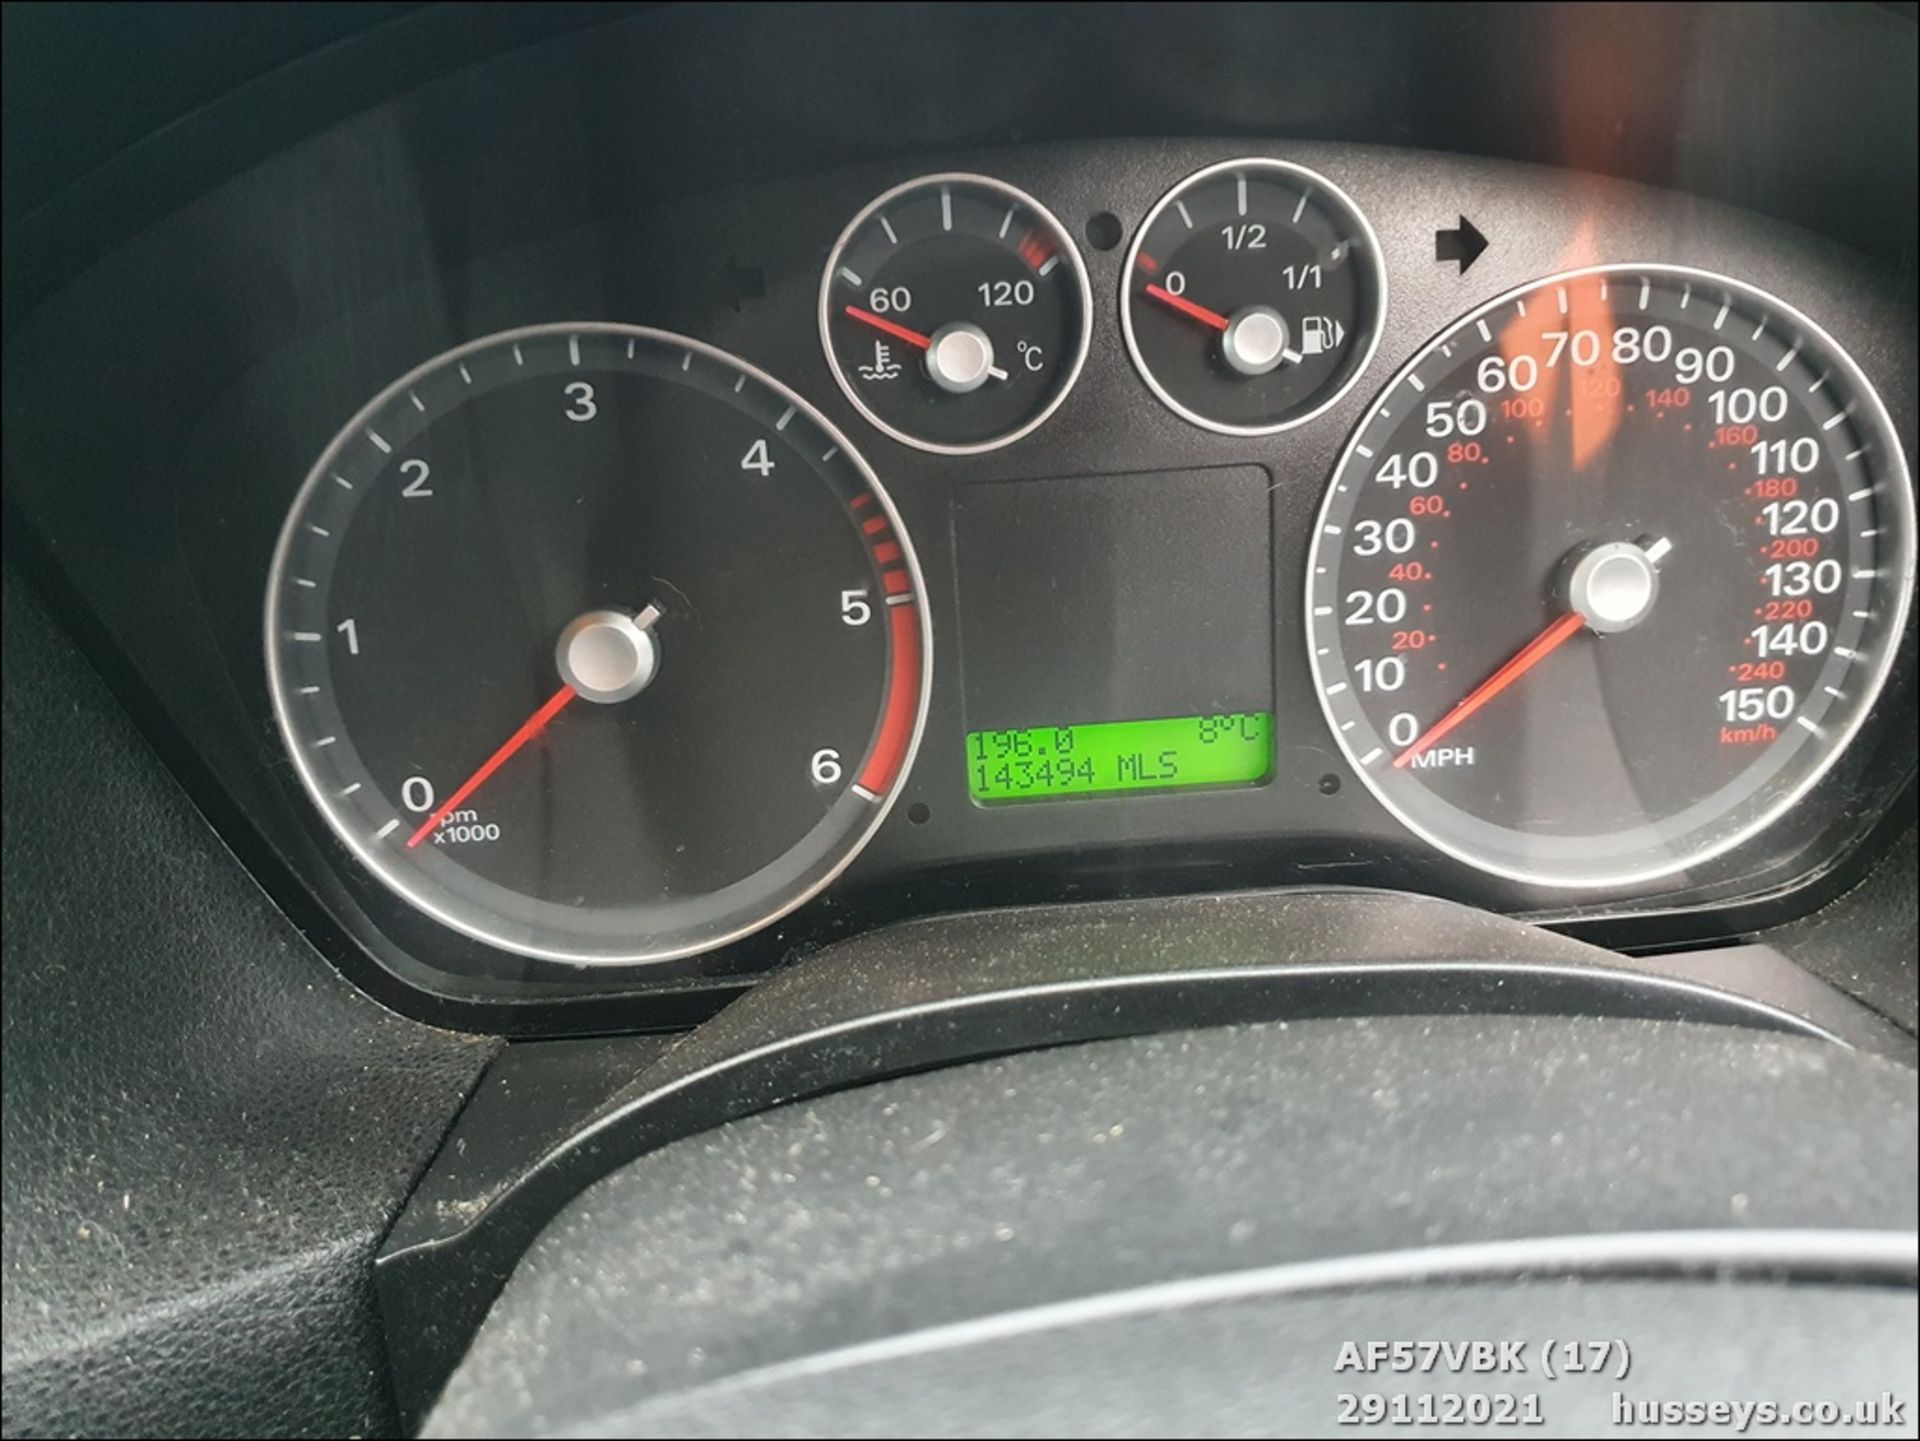 07/57 FORD FOCUS ZETEC CLIMATE TDCI - 1560cc 5dr Hatchback (Red, 143k) - Image 17 of 20